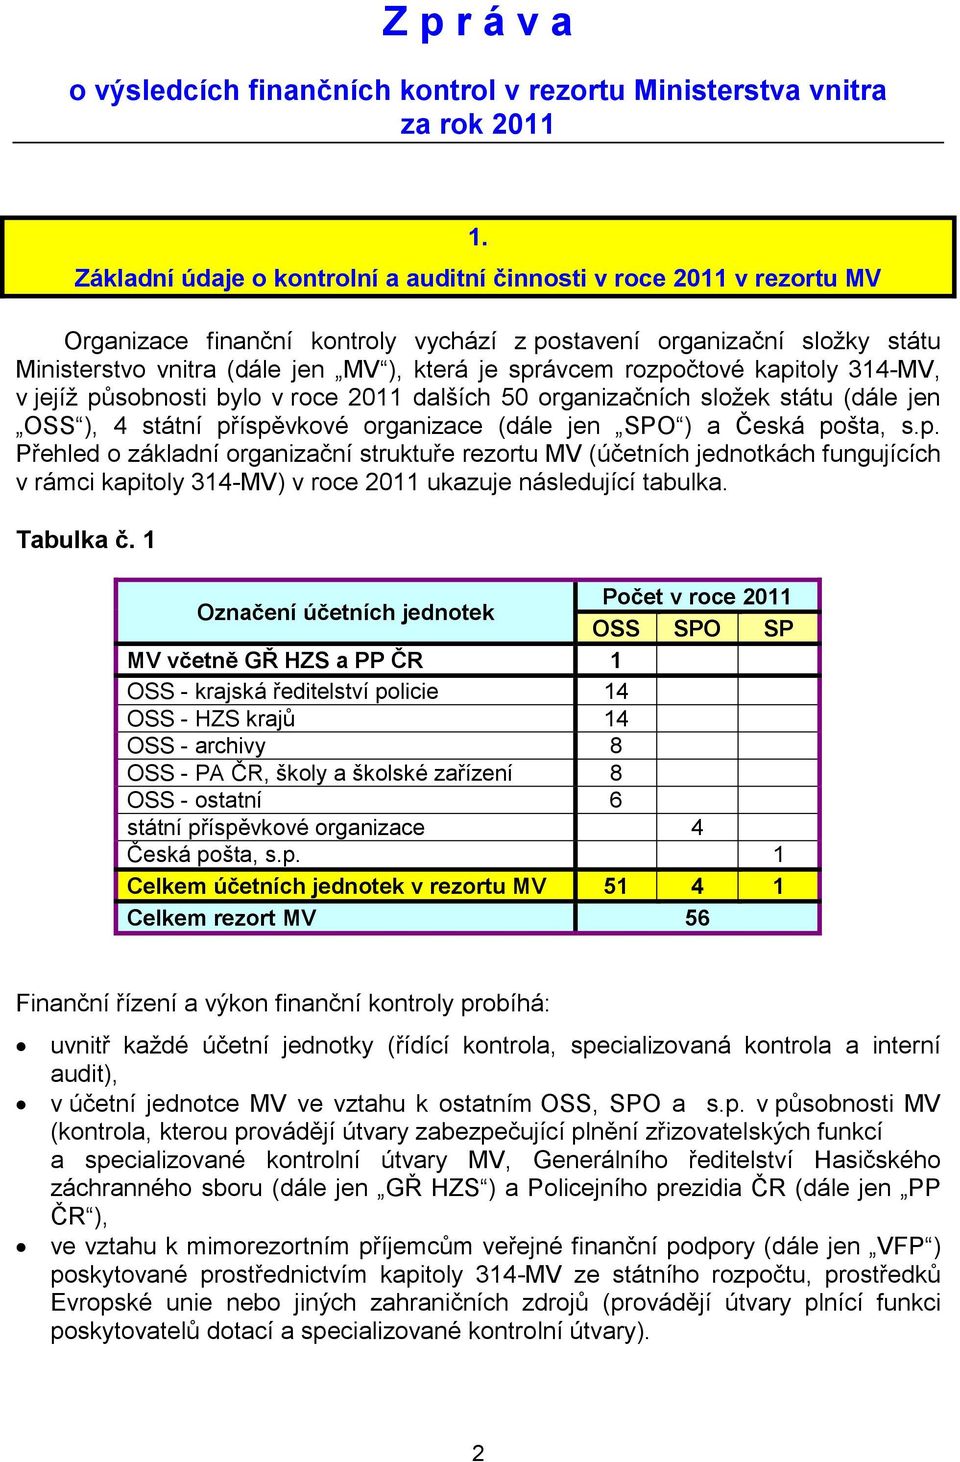 rozpočtové kapitoly 314-MV, v jejíţ působnosti bylo v roce 2011 dalších 50 organizačních sloţek státu (dále jen OSS ), 4 státní příspěvkové organizace (dále jen SPO ) a Česká pošta, s.p. Přehled o základní organizační struktuře rezortu MV (účetních jednotkách fungujících v rámci kapitoly 314-MV) v roce 2011 ukazuje následující tabulka.